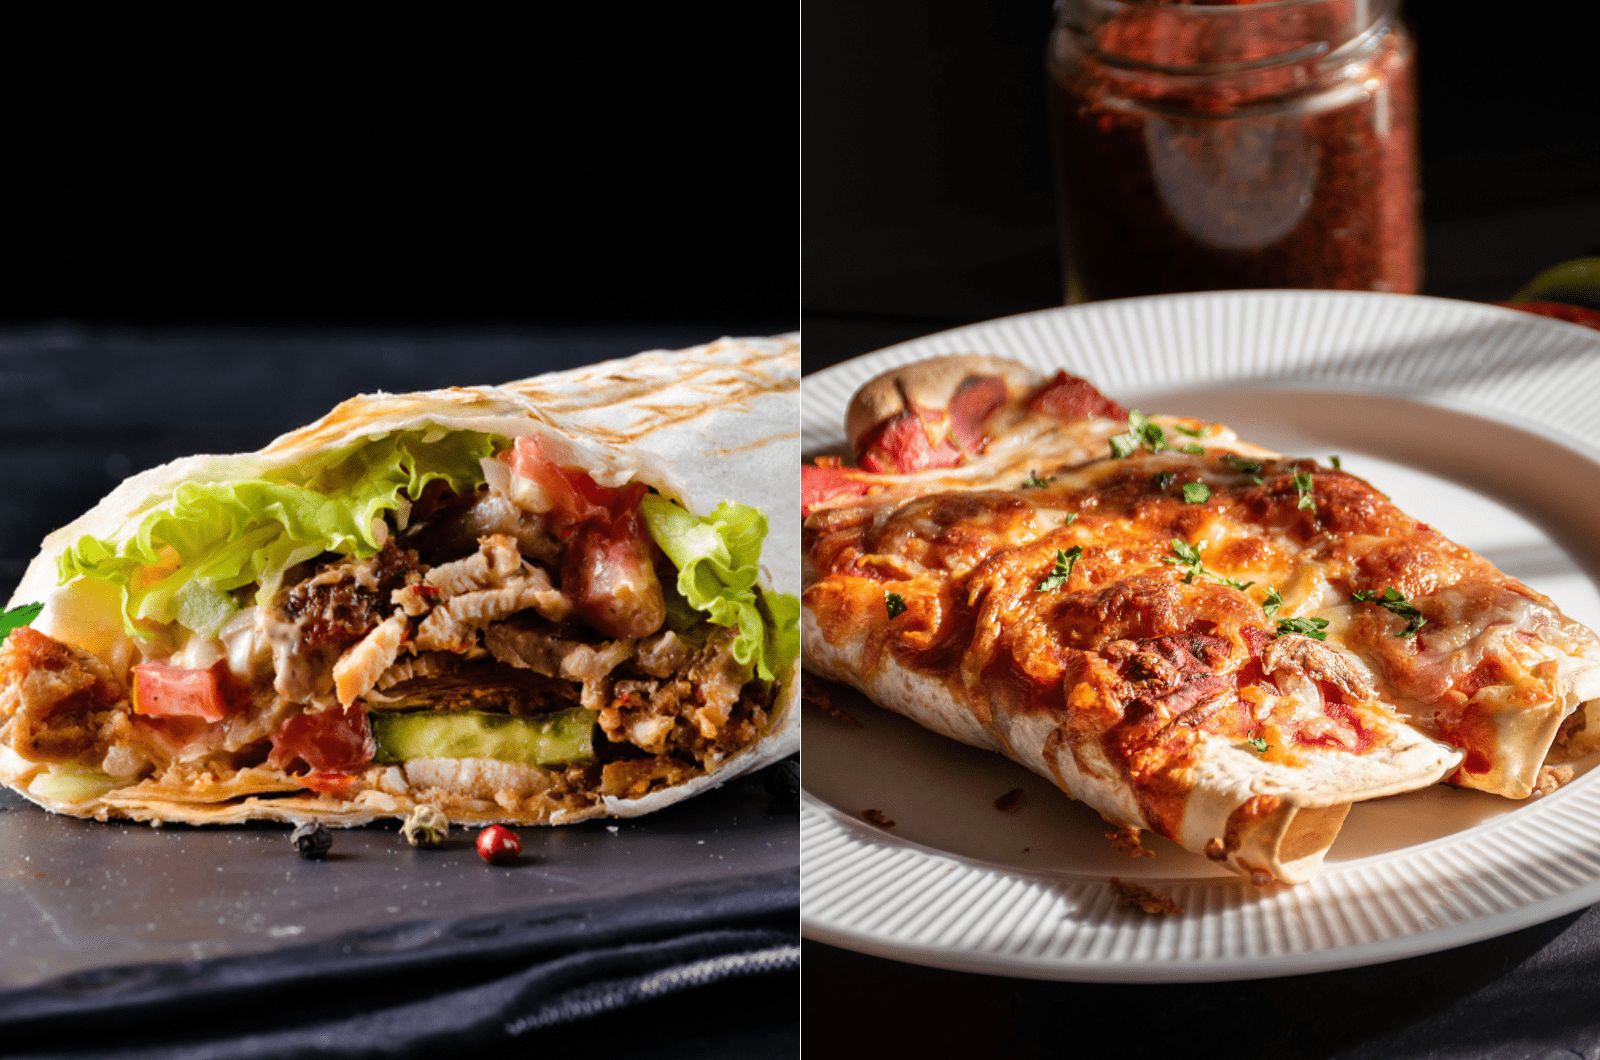 Vergleich zwischen Enchilada und Burrito